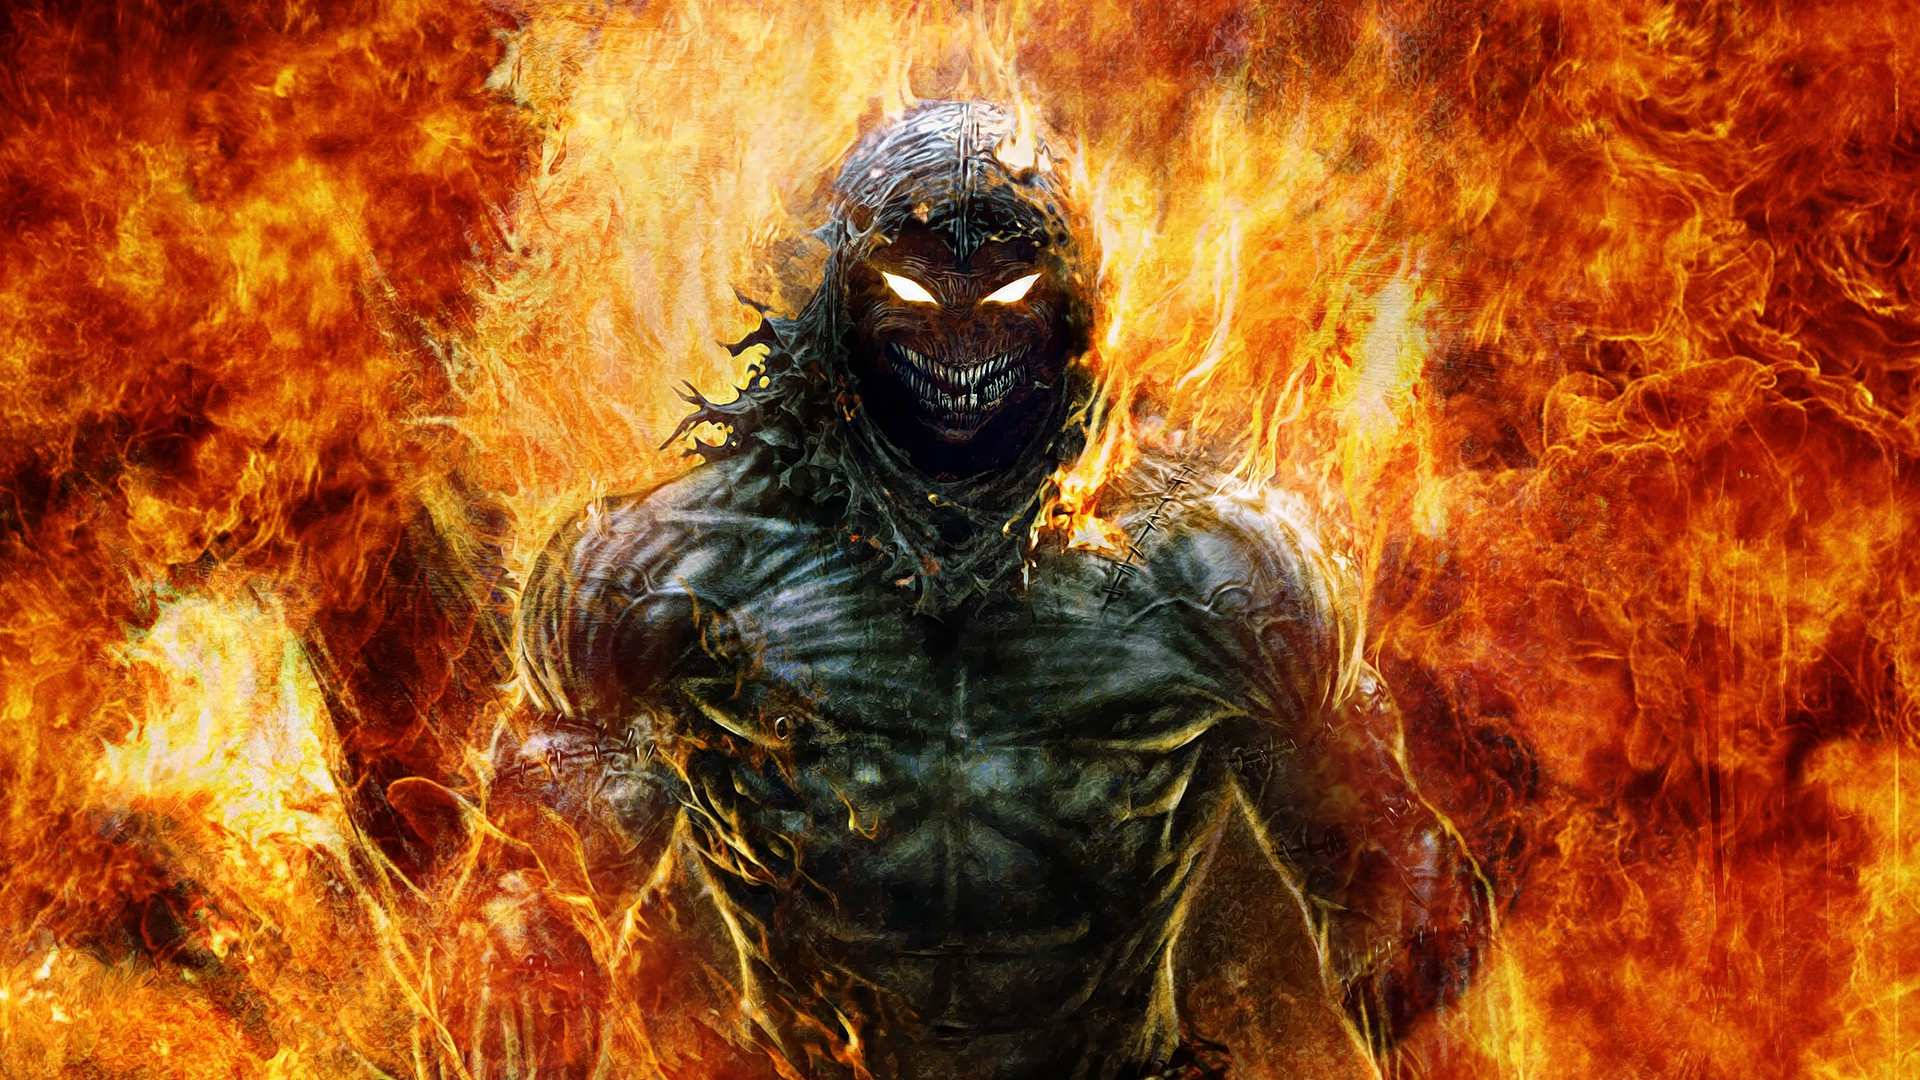 An Evil Demon Born From Fire Wallpaper